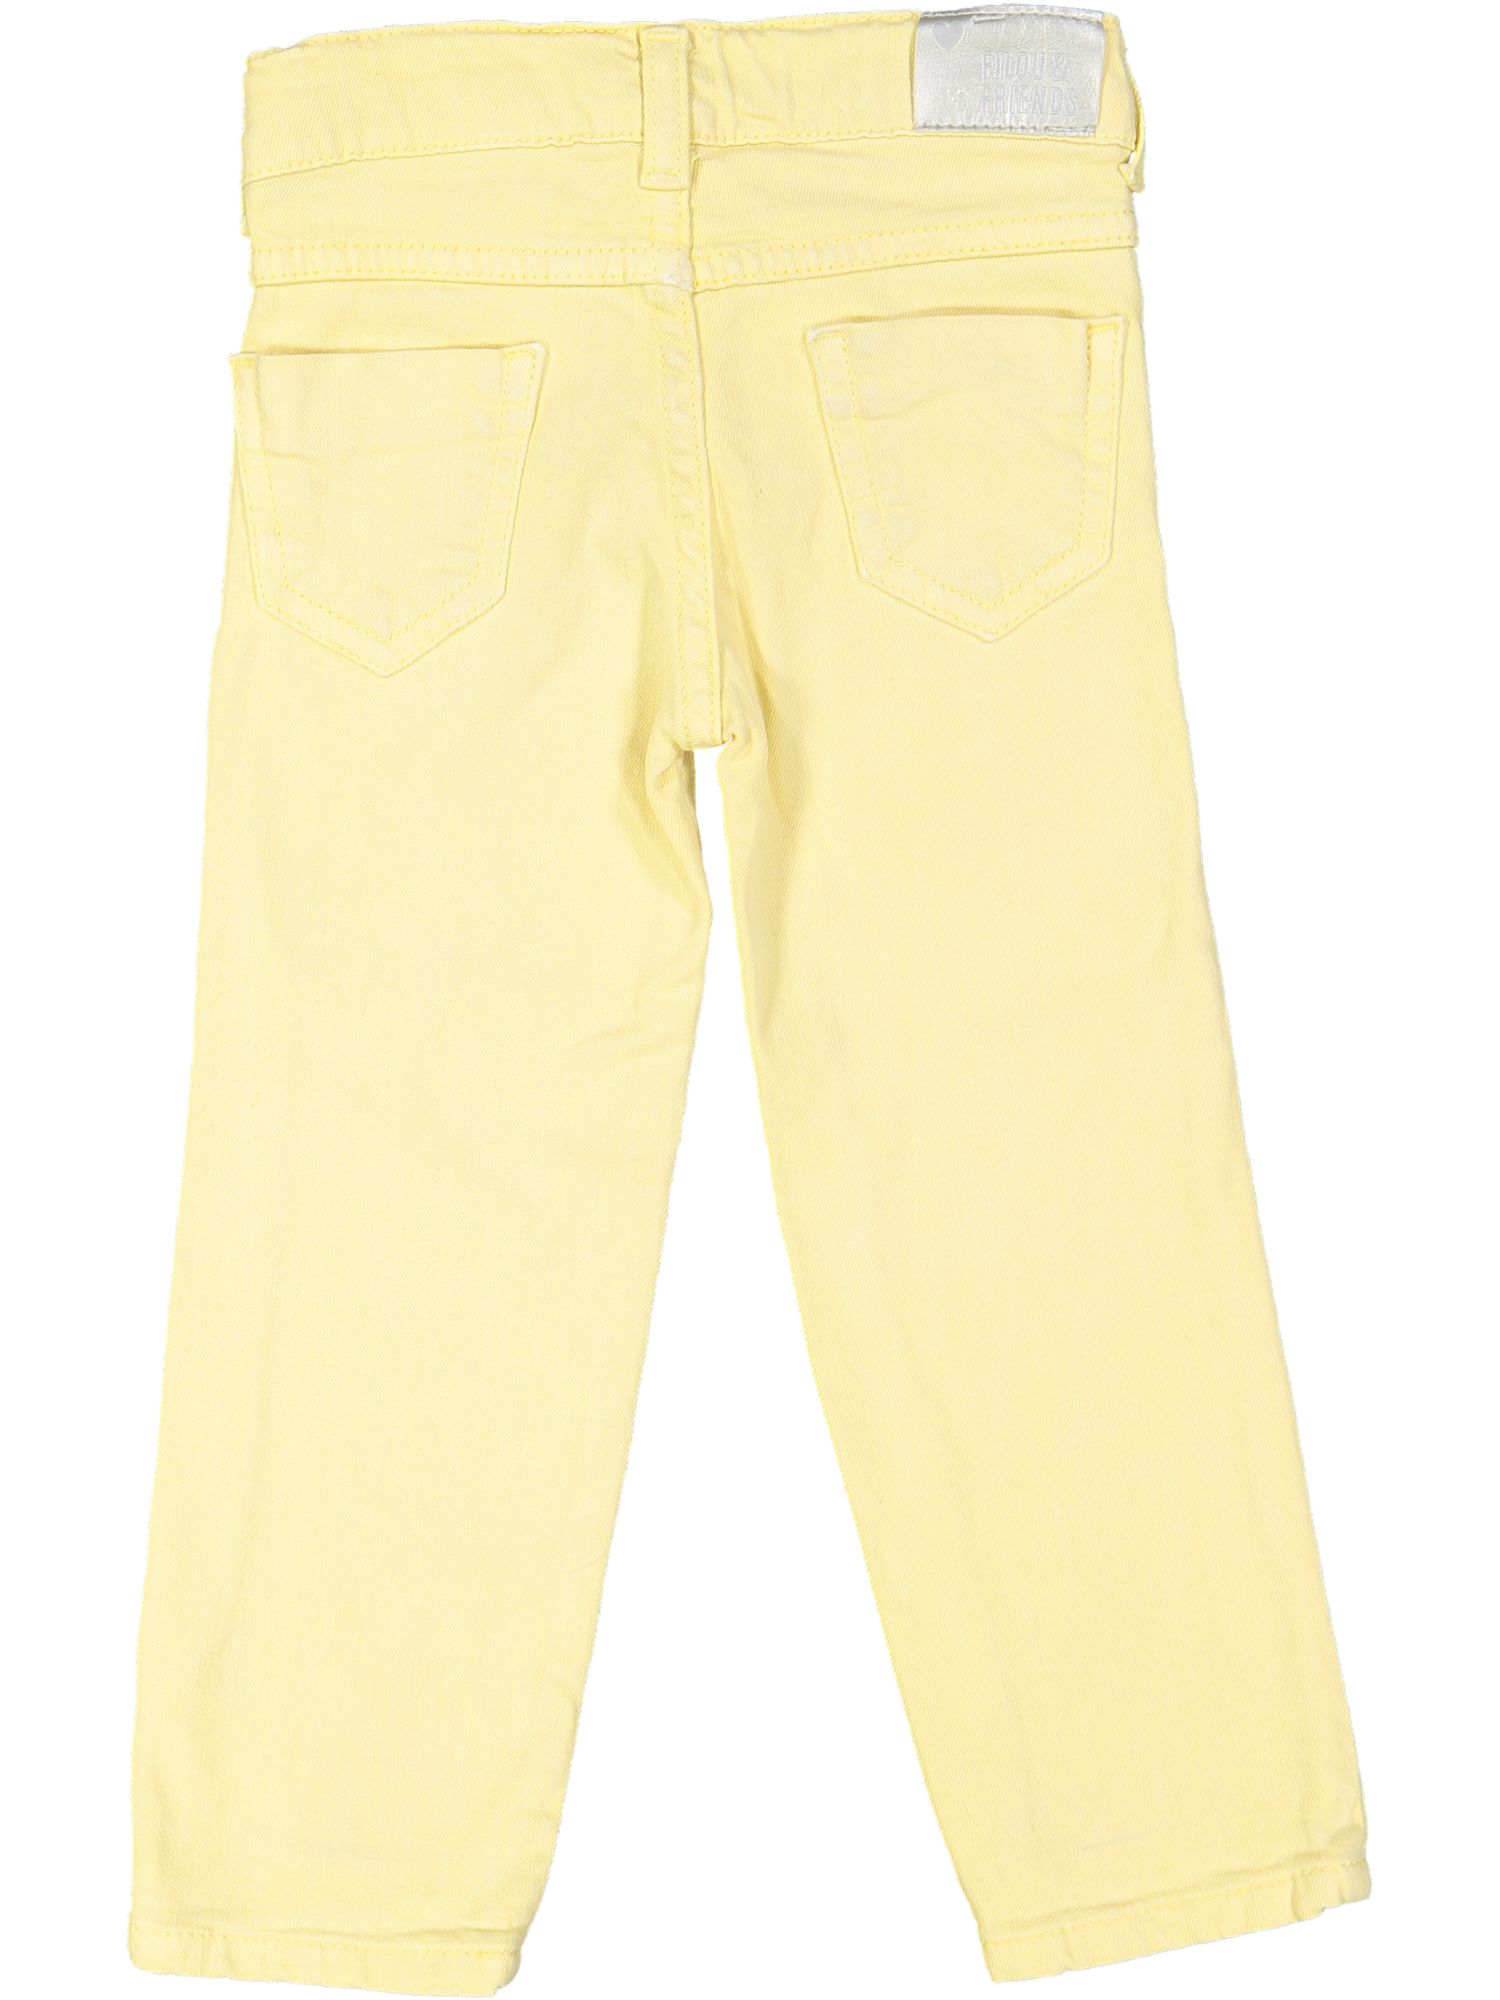 lange broek geel jeans 02j .